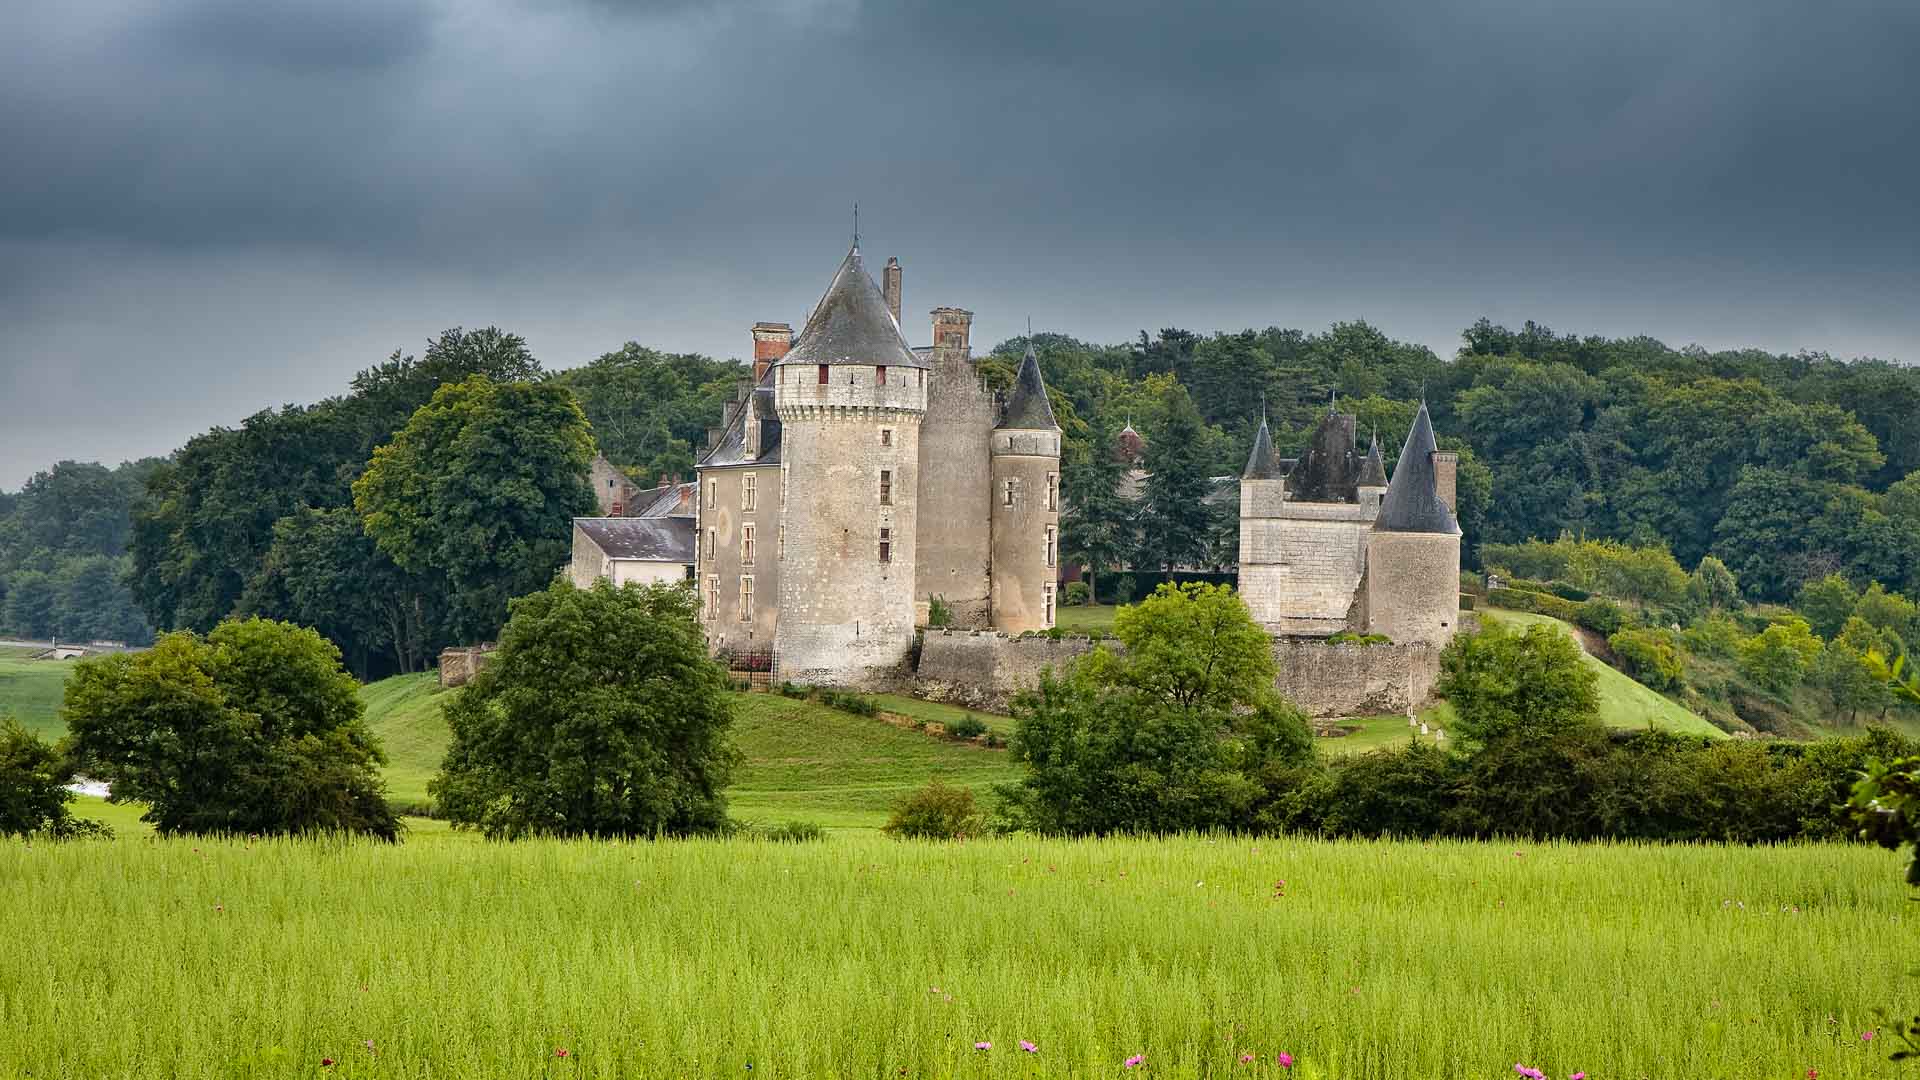 Château of Montpoupon, in Céré-la-Ronde, France.